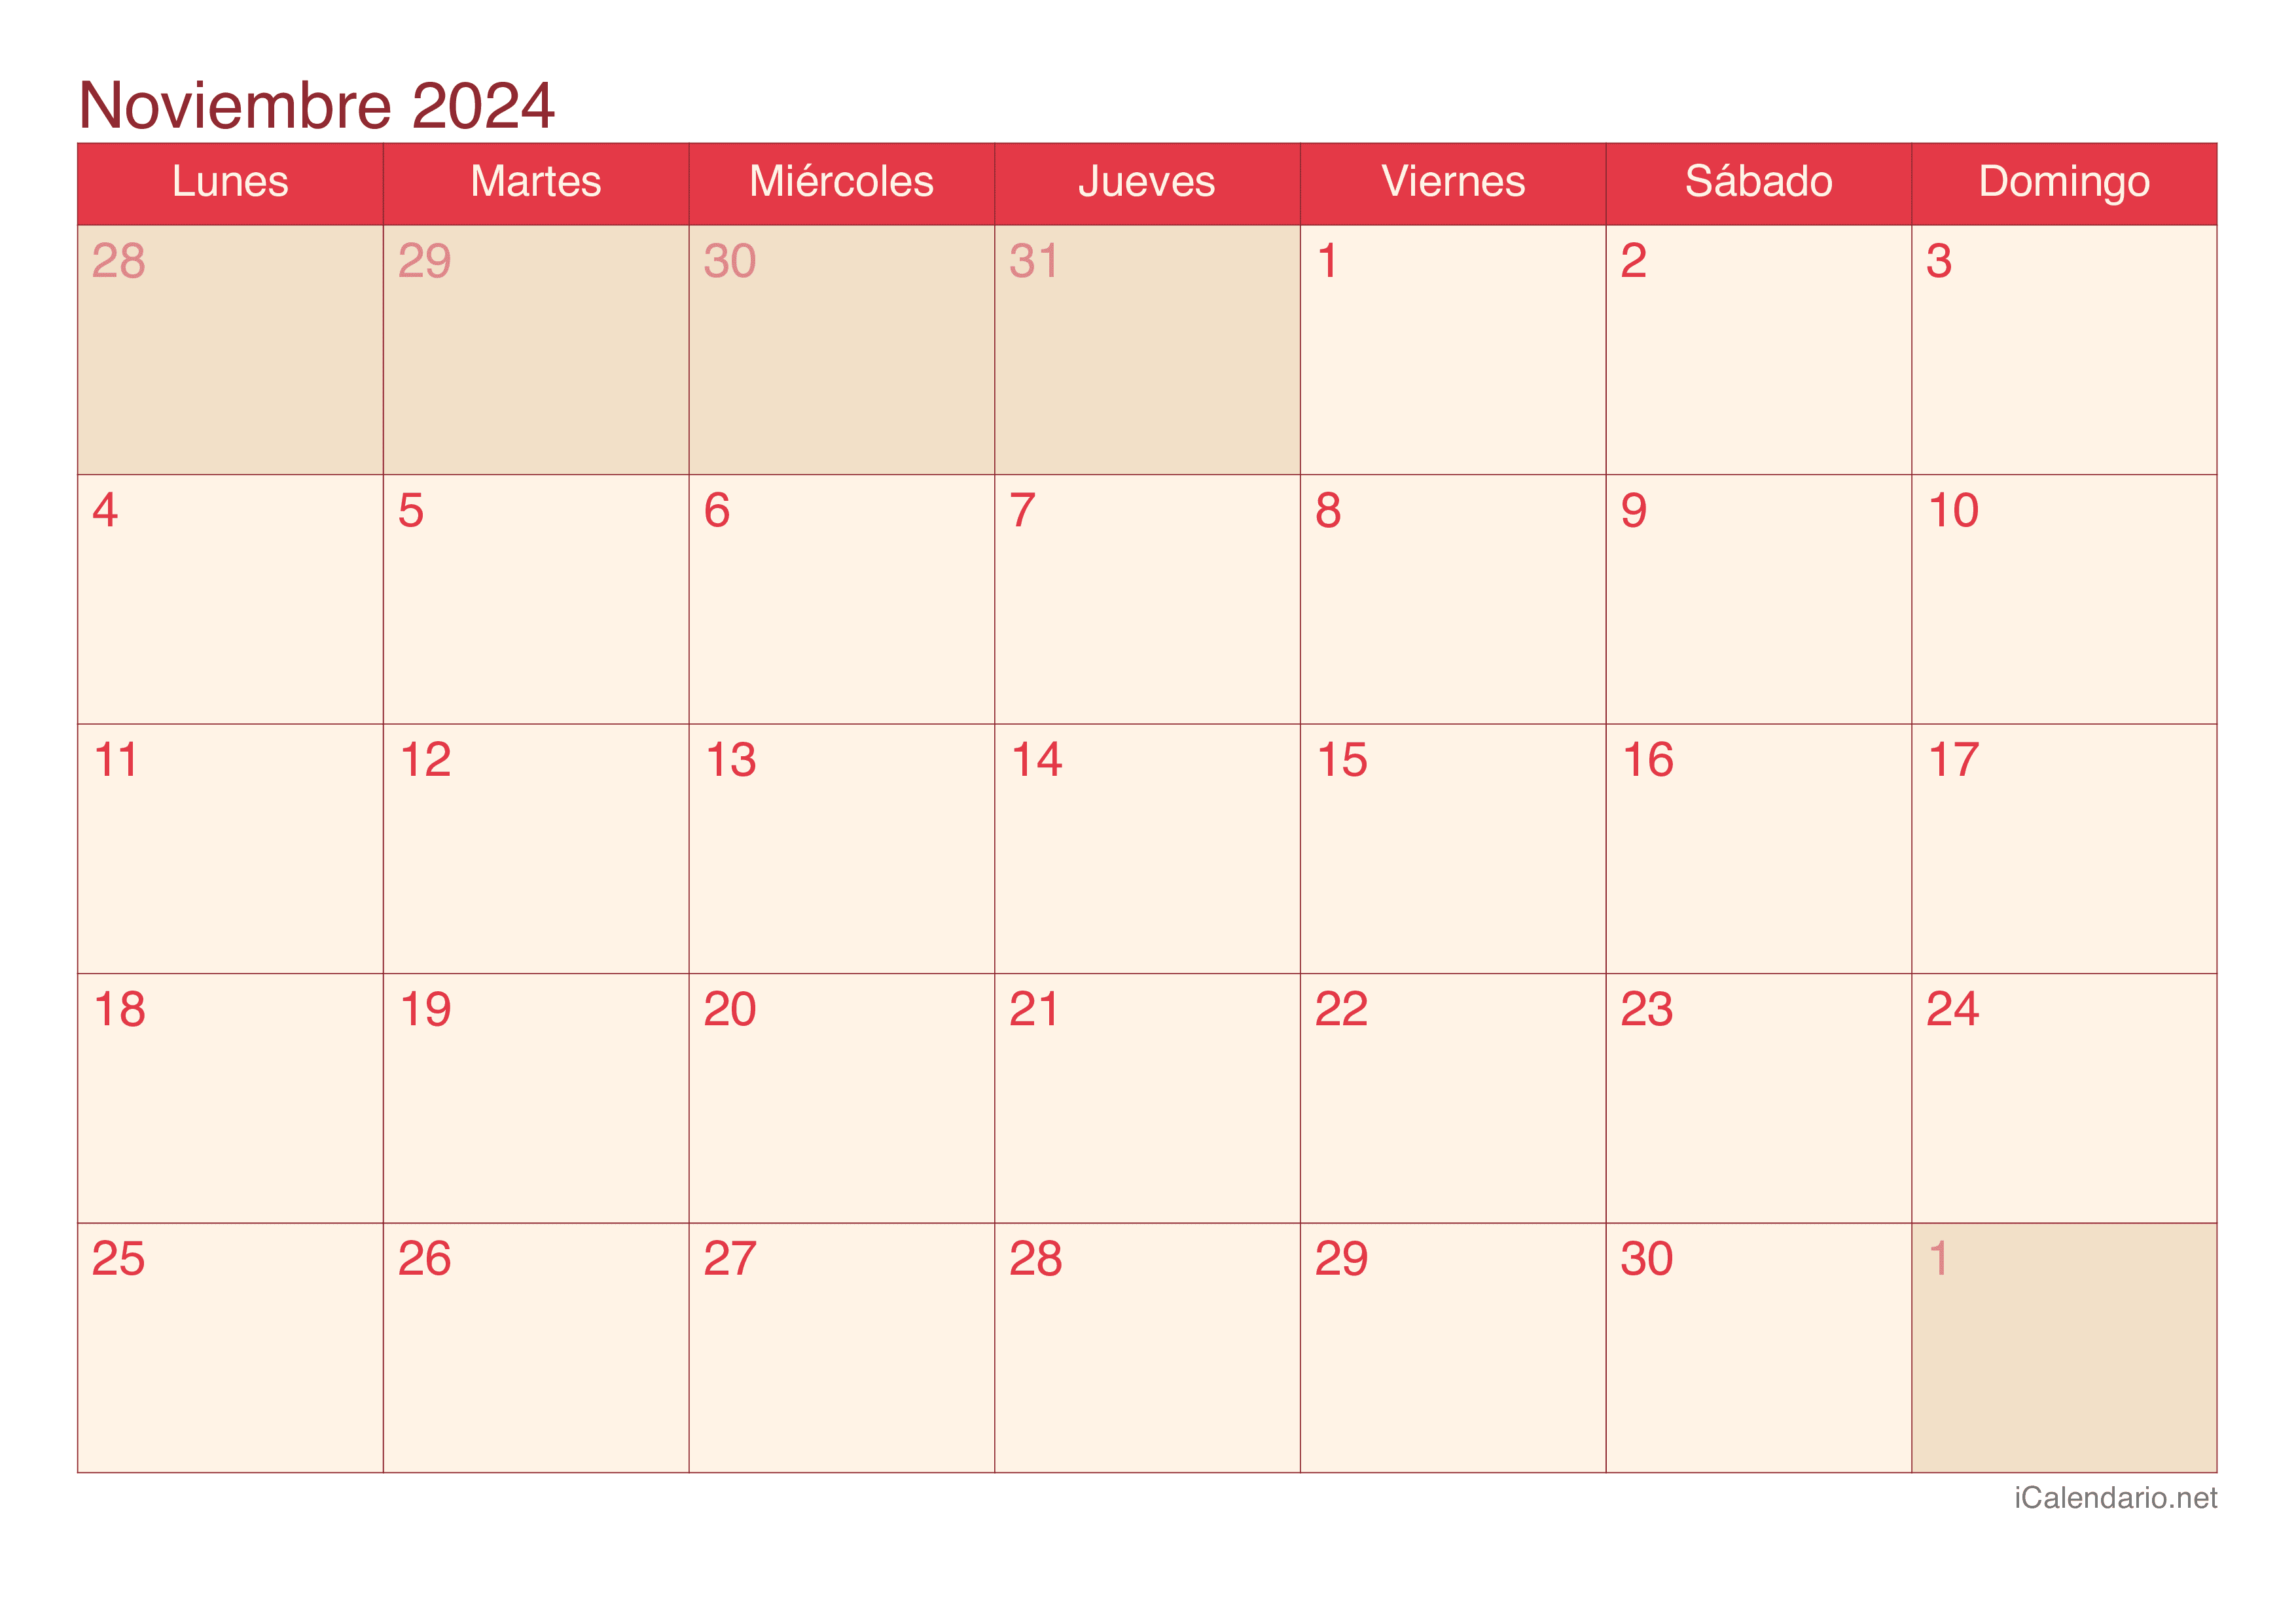 Calendario de noviembre 2024 - Cherry